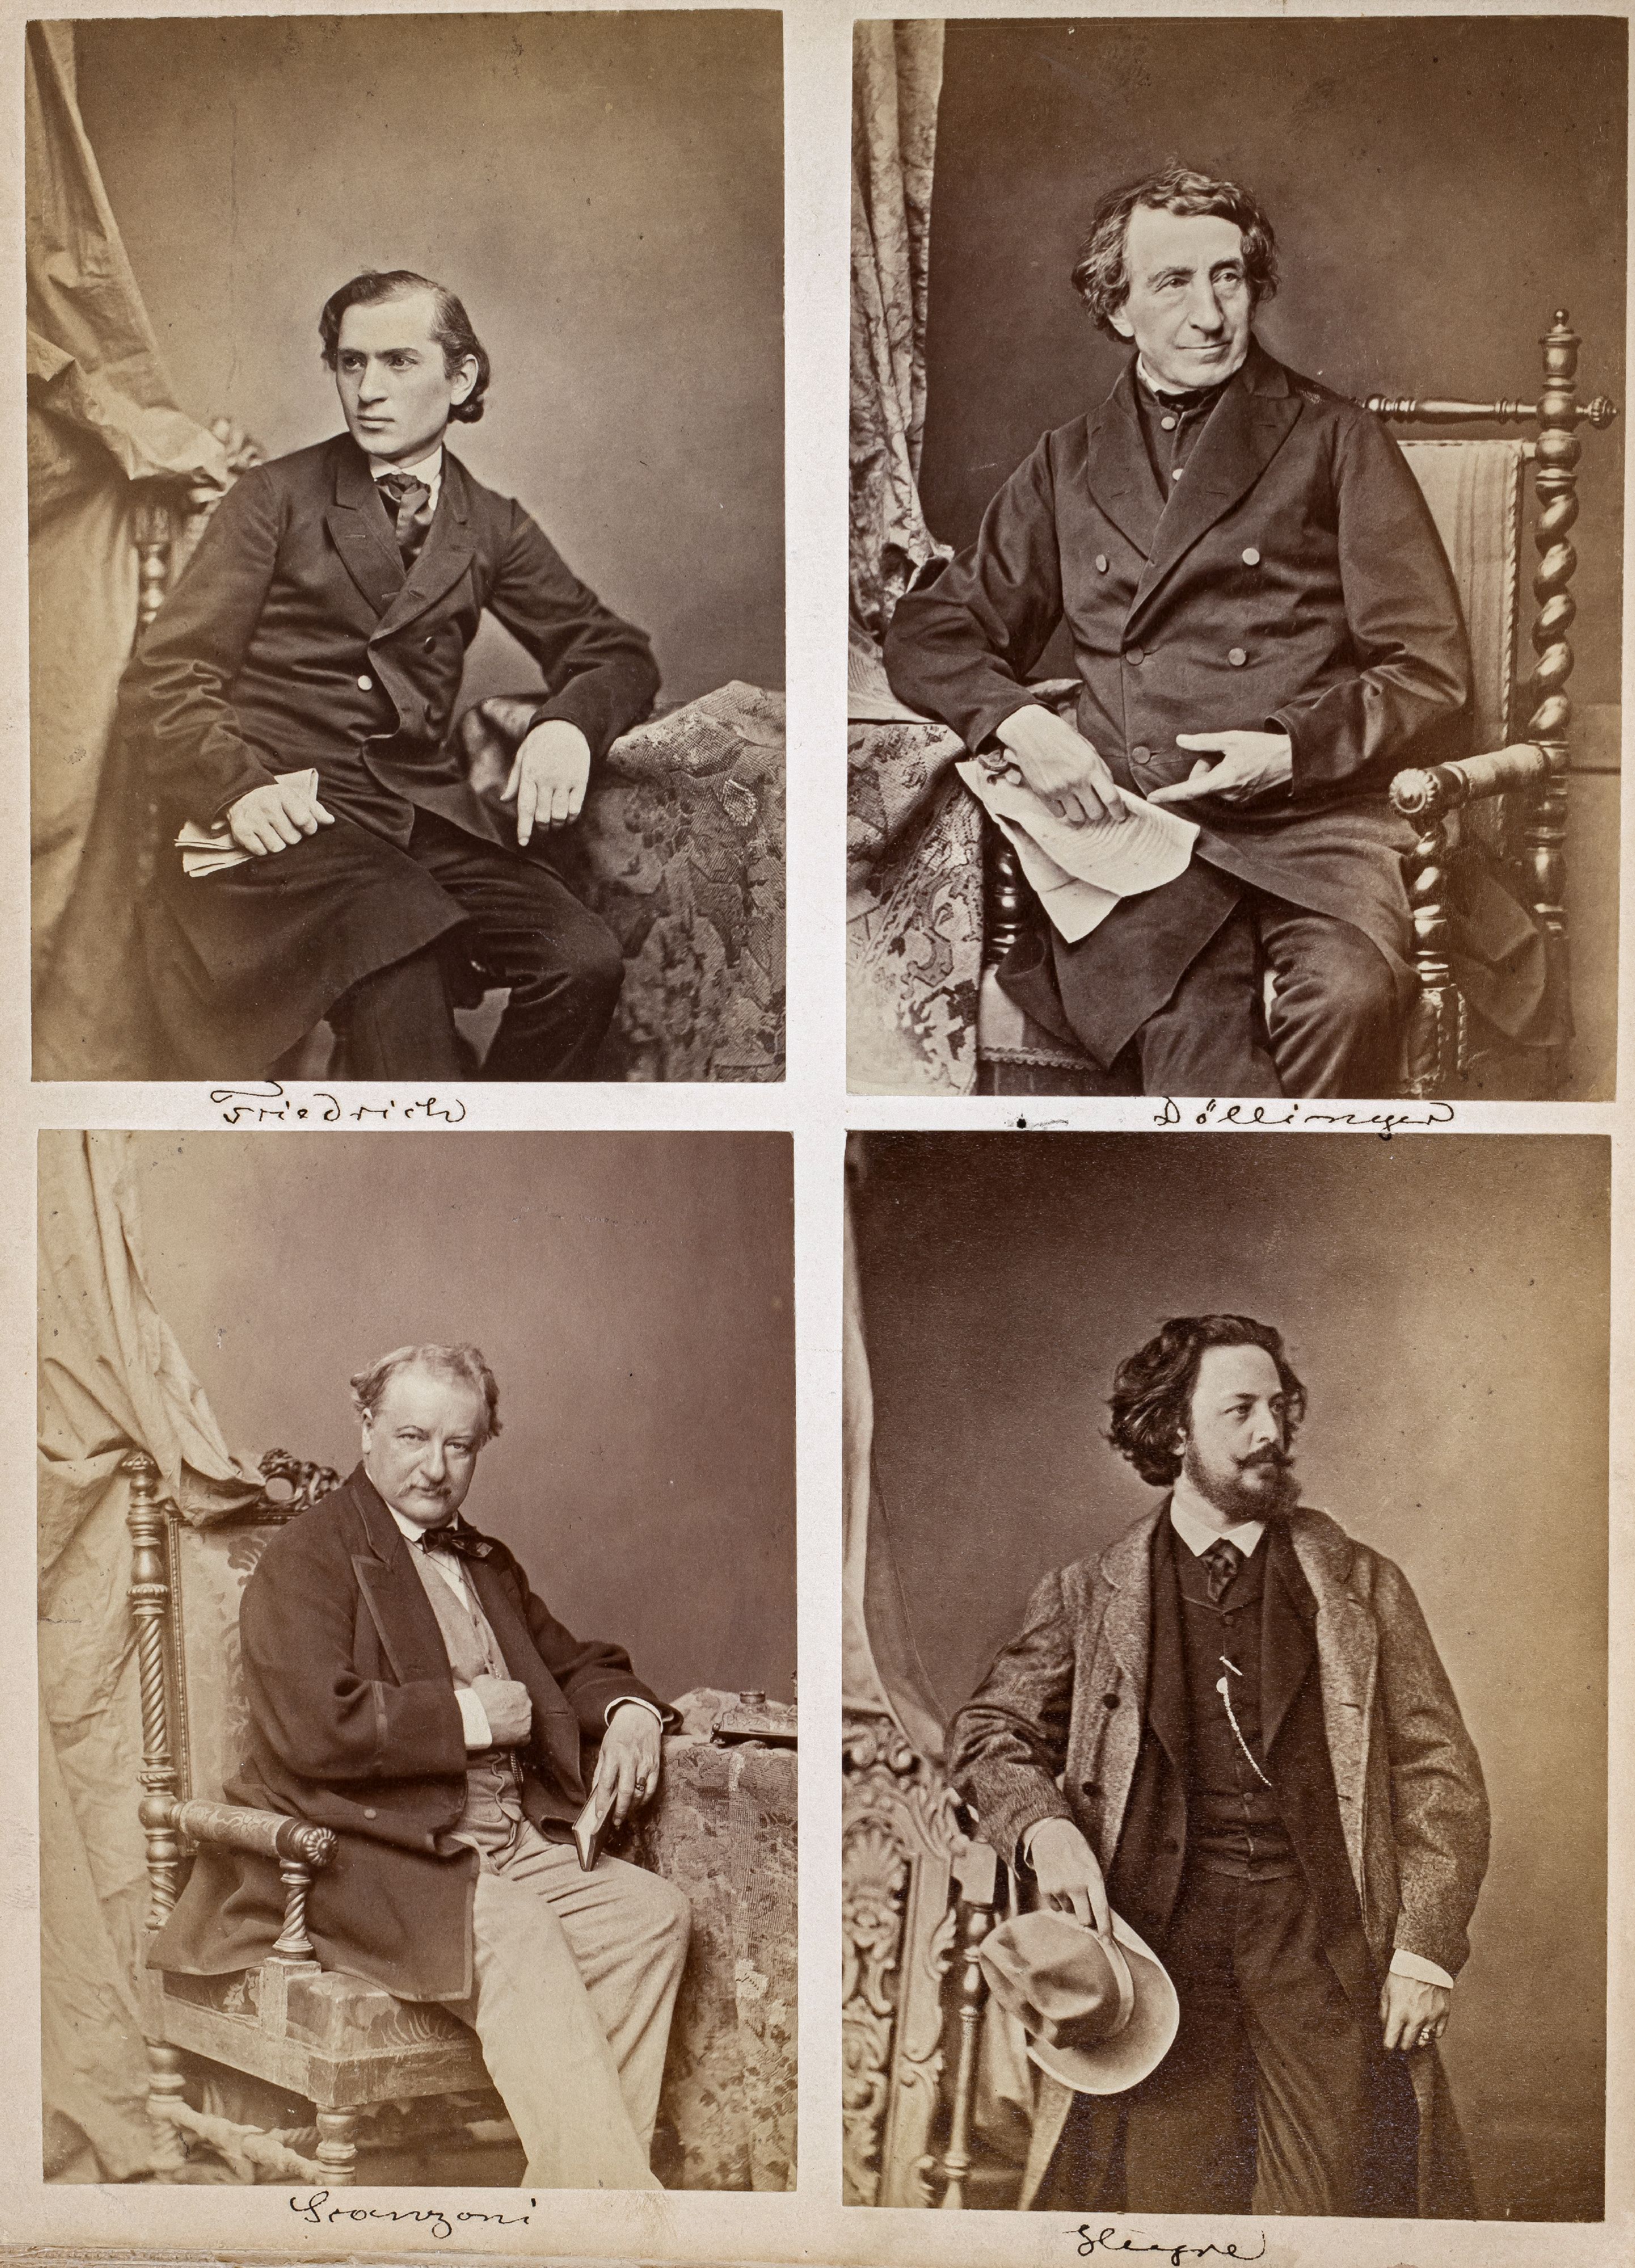 FOTOGRAFIE | Hanfstaengl, Franz | 1807 Baiernrain bei Tölz - 1877 München - Bild 6 aus 25